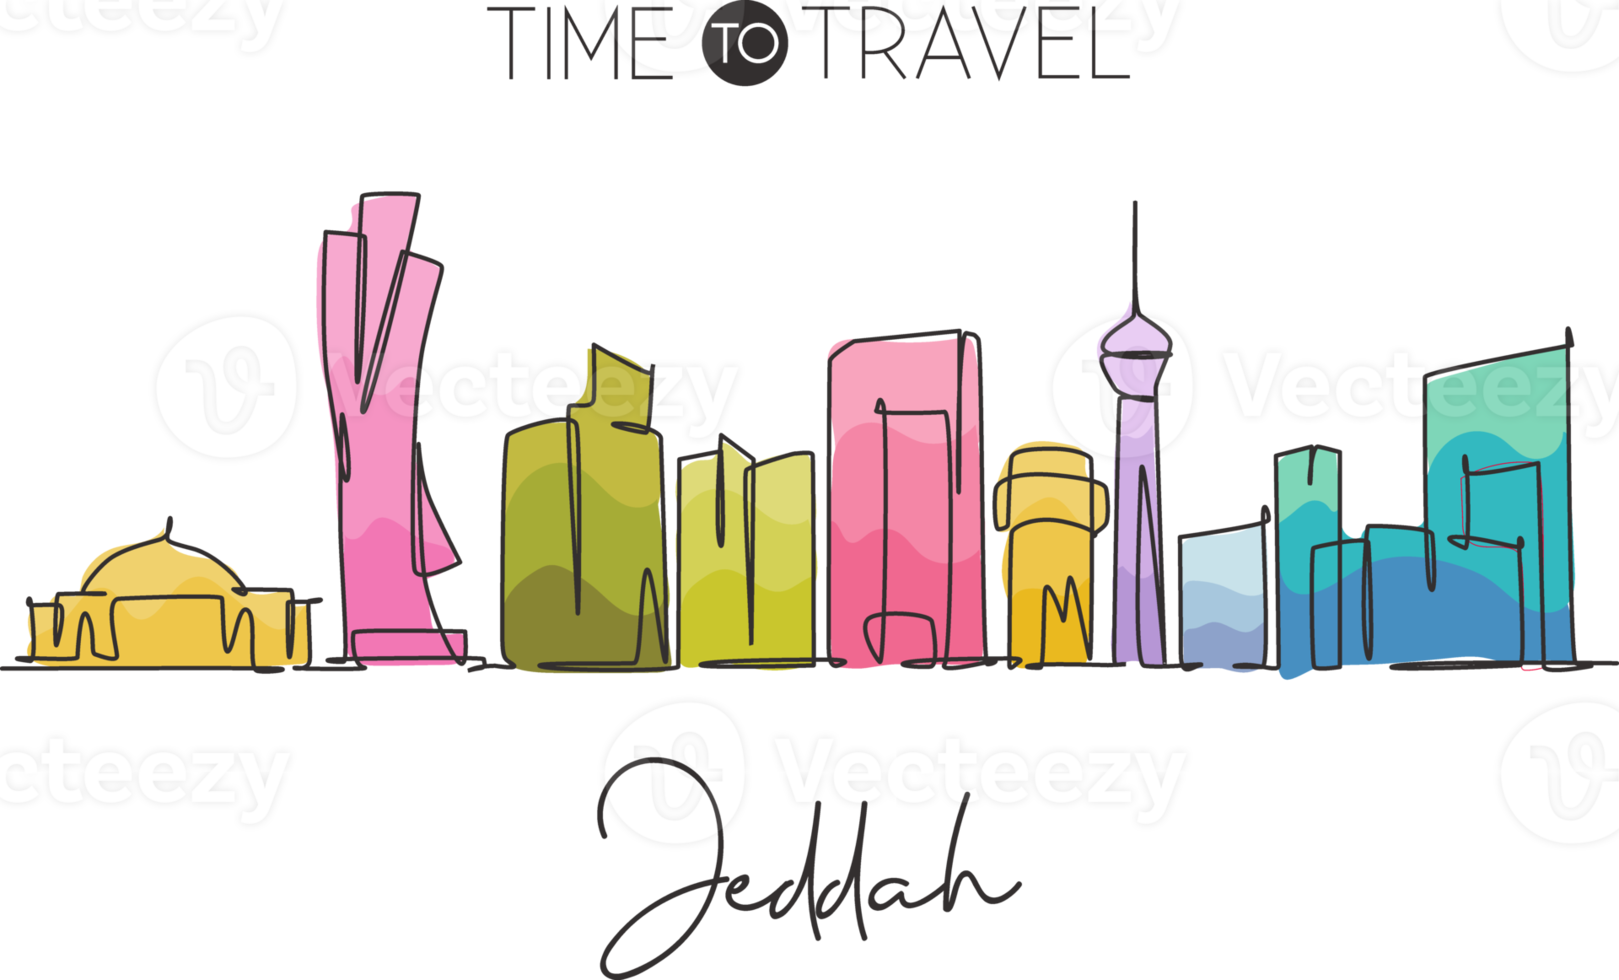 een enkele lijntekening van de skyline van de stad jeddah, saoedi-arabië. wereld historisch stadslandschap. beste vakantiebestemming muur decor poster print. trendy doorlopende lijn tekenen ontwerp vectorillustratie png